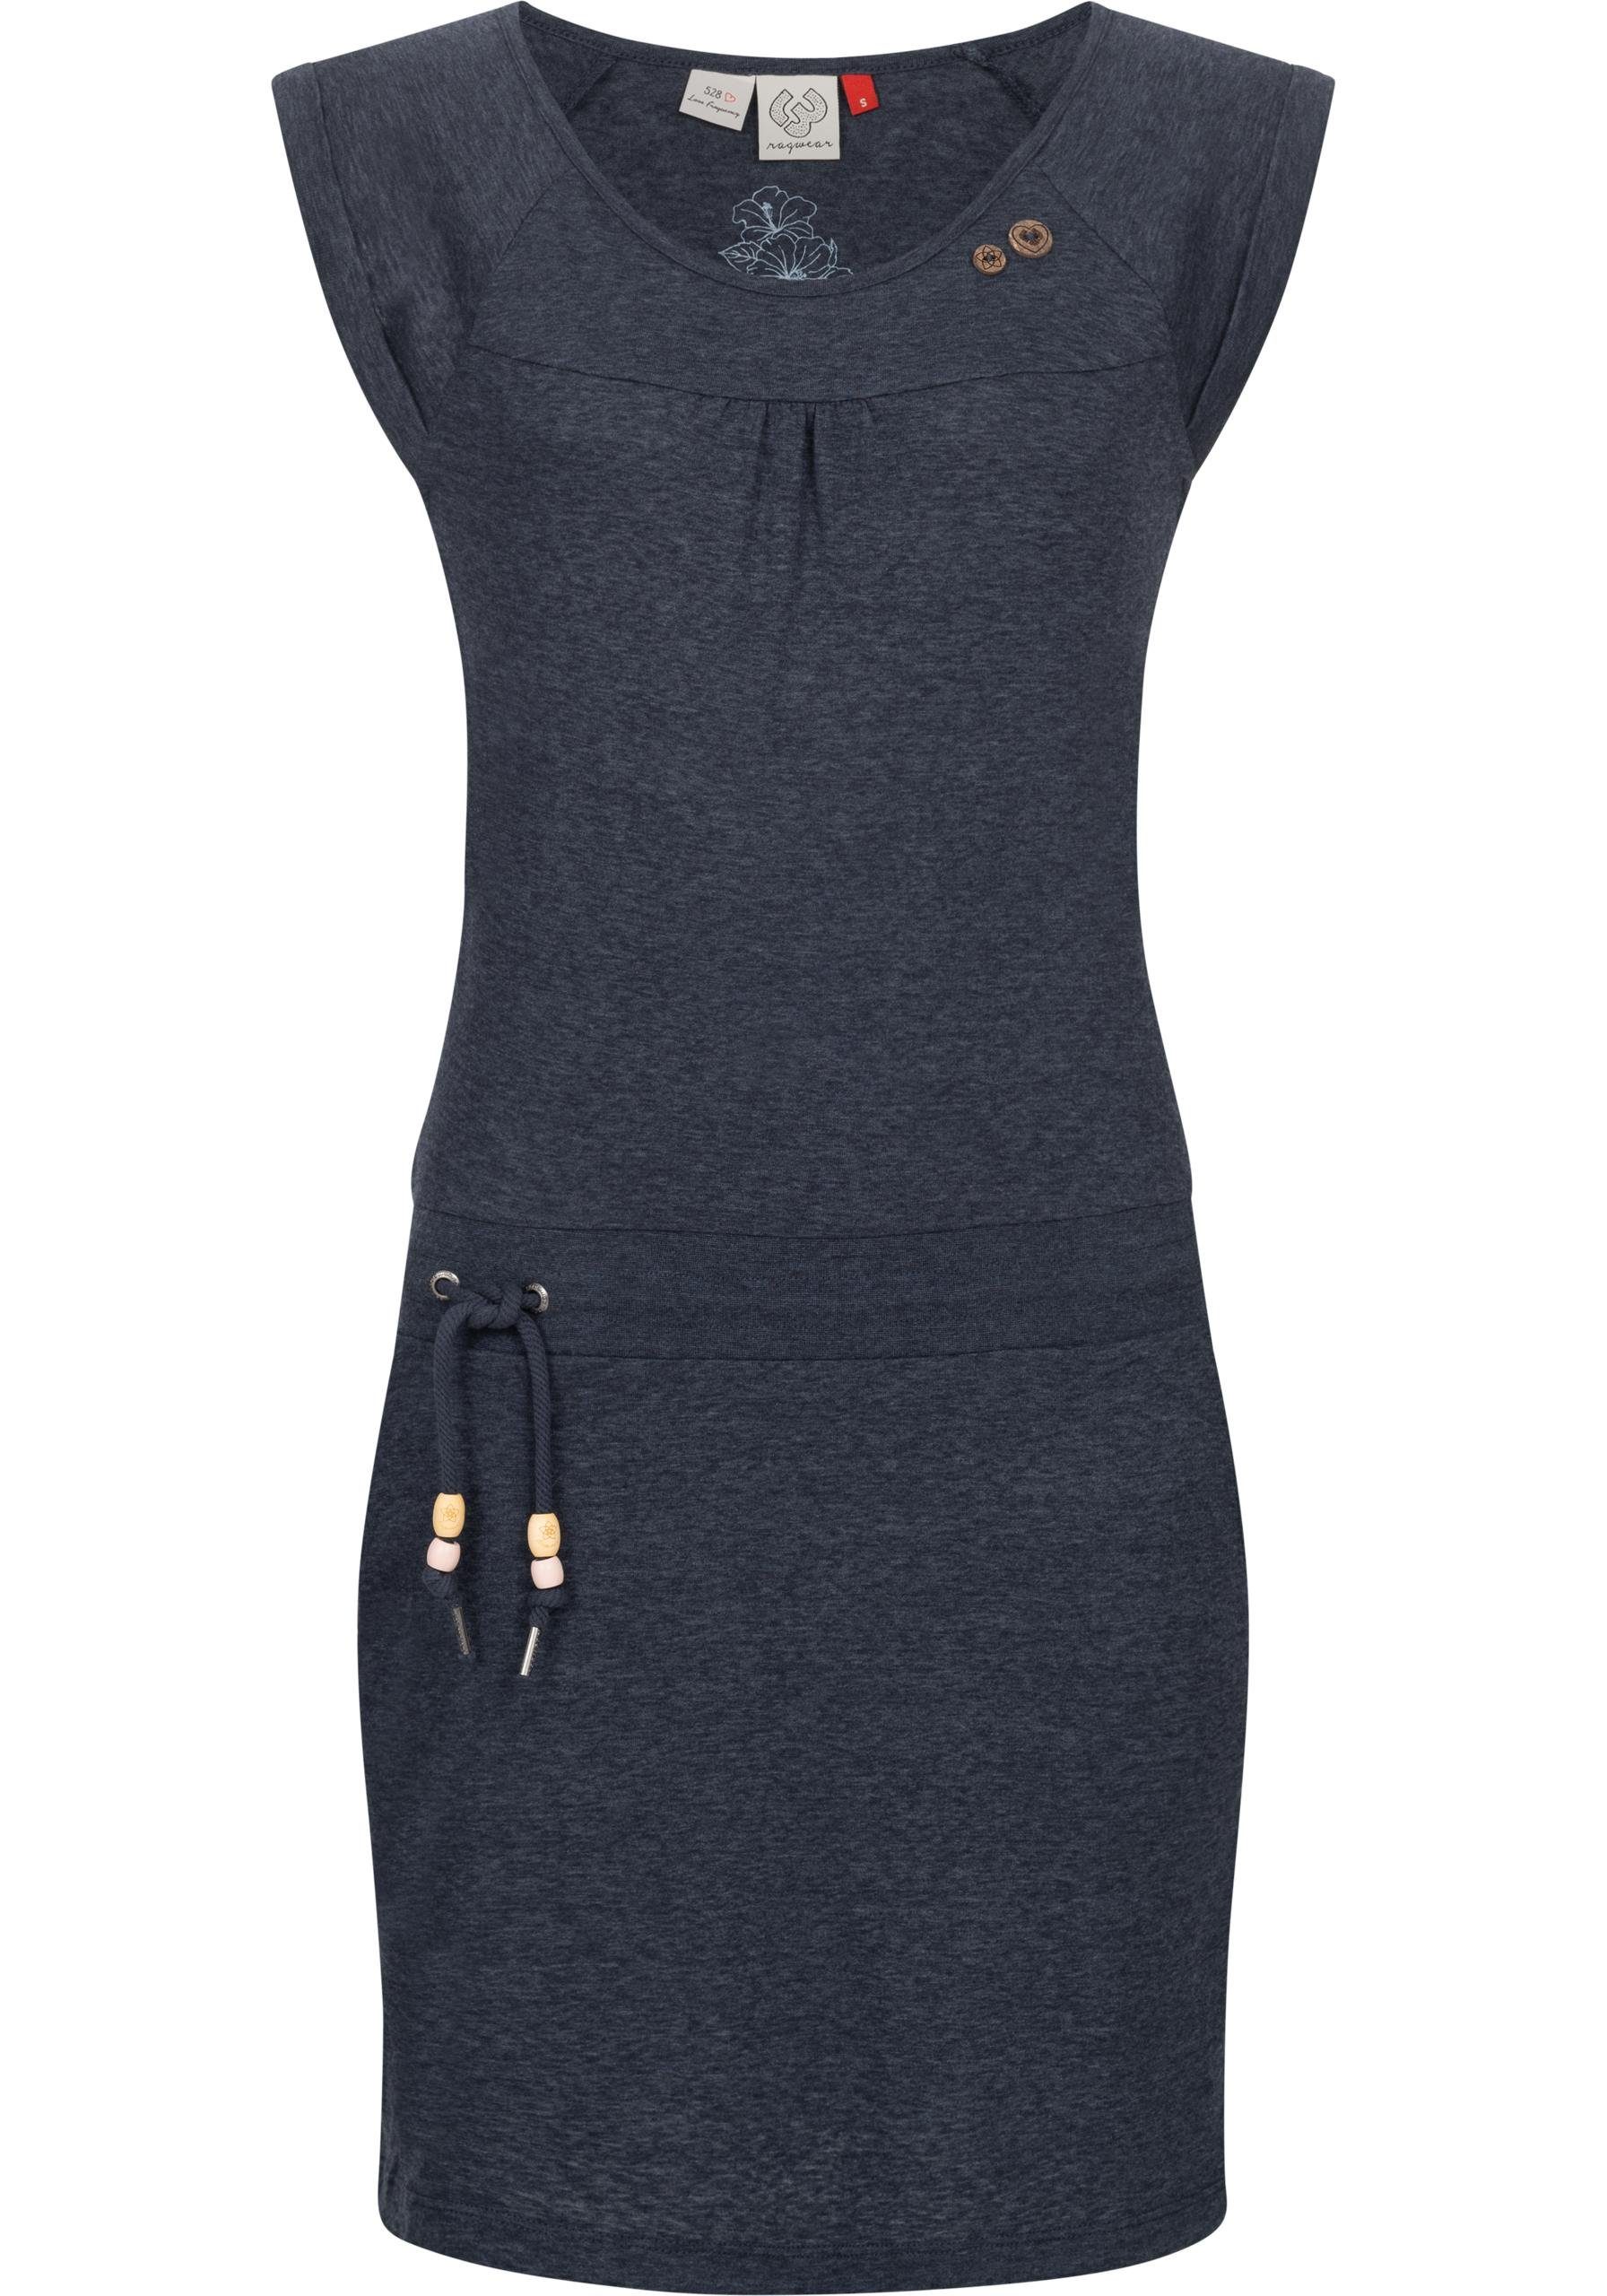 Ragwear Sommerkleid Penelope leichtes Baumwoll Kleid mit Print jeansblau